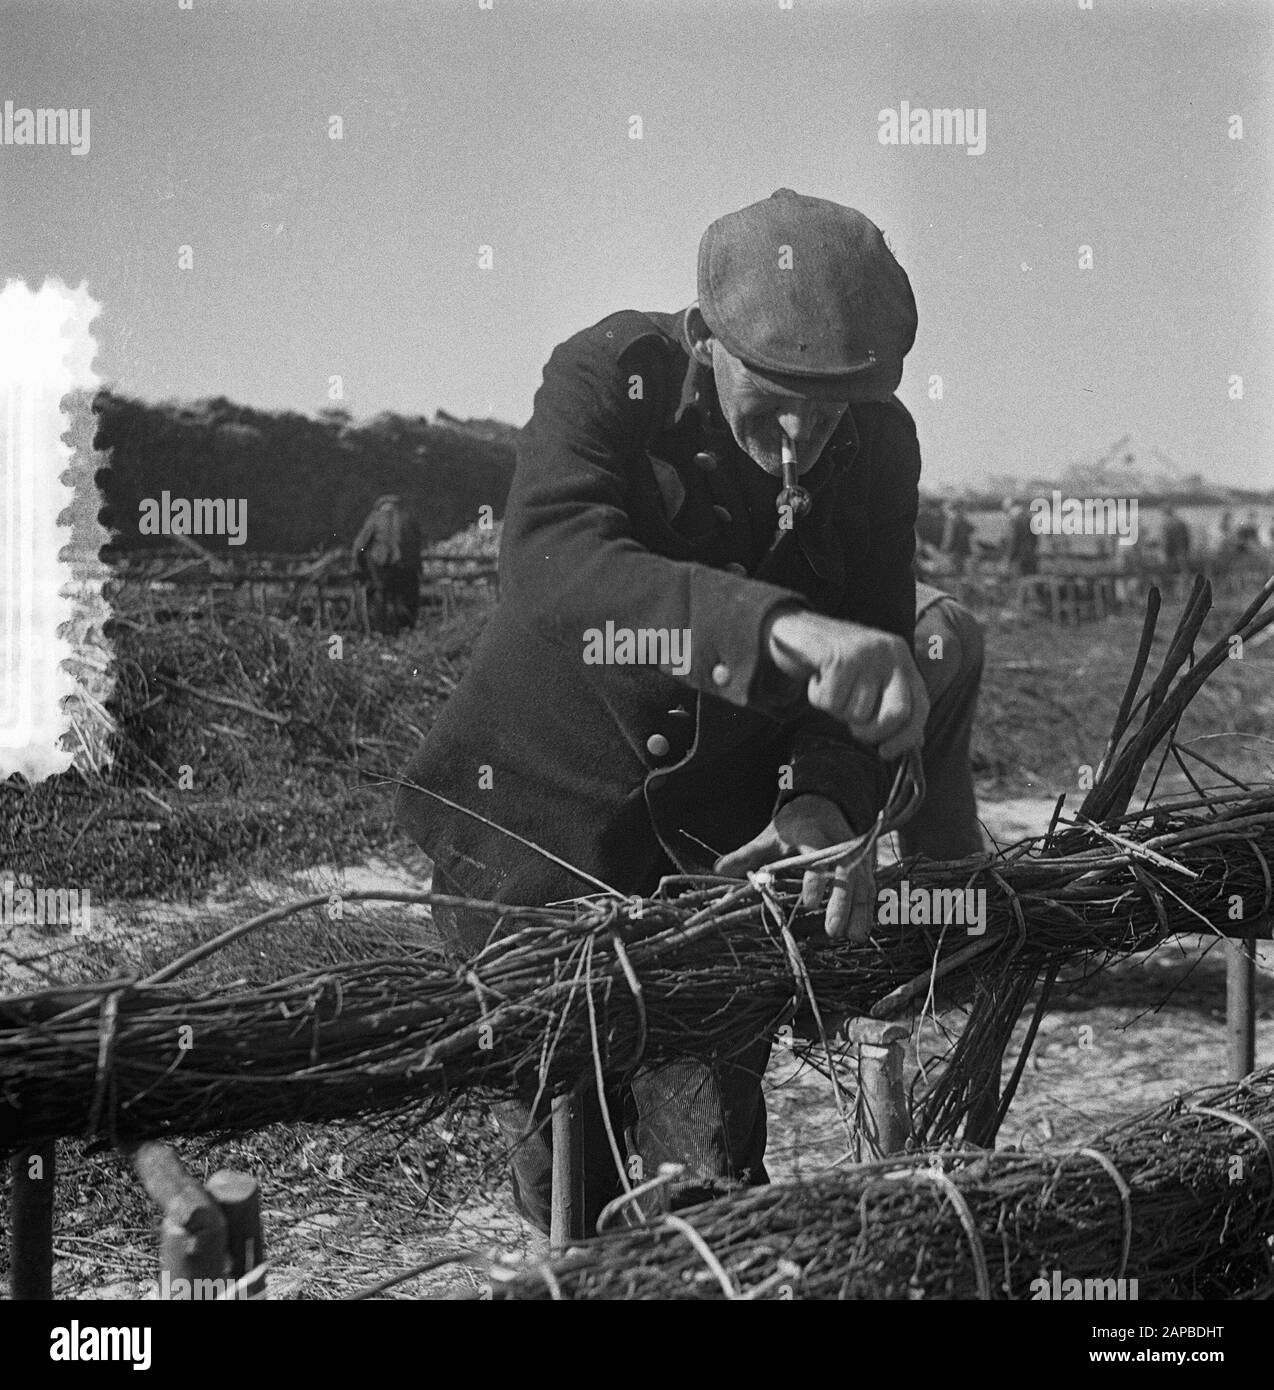 Lo Schelphoek Su Schouwen. Film Making zinco pieces Data: 9 luglio 1953 luogo: Schouwen-Duiveland, Zeeland Parole Chiave: ZINKPIECS Foto Stock